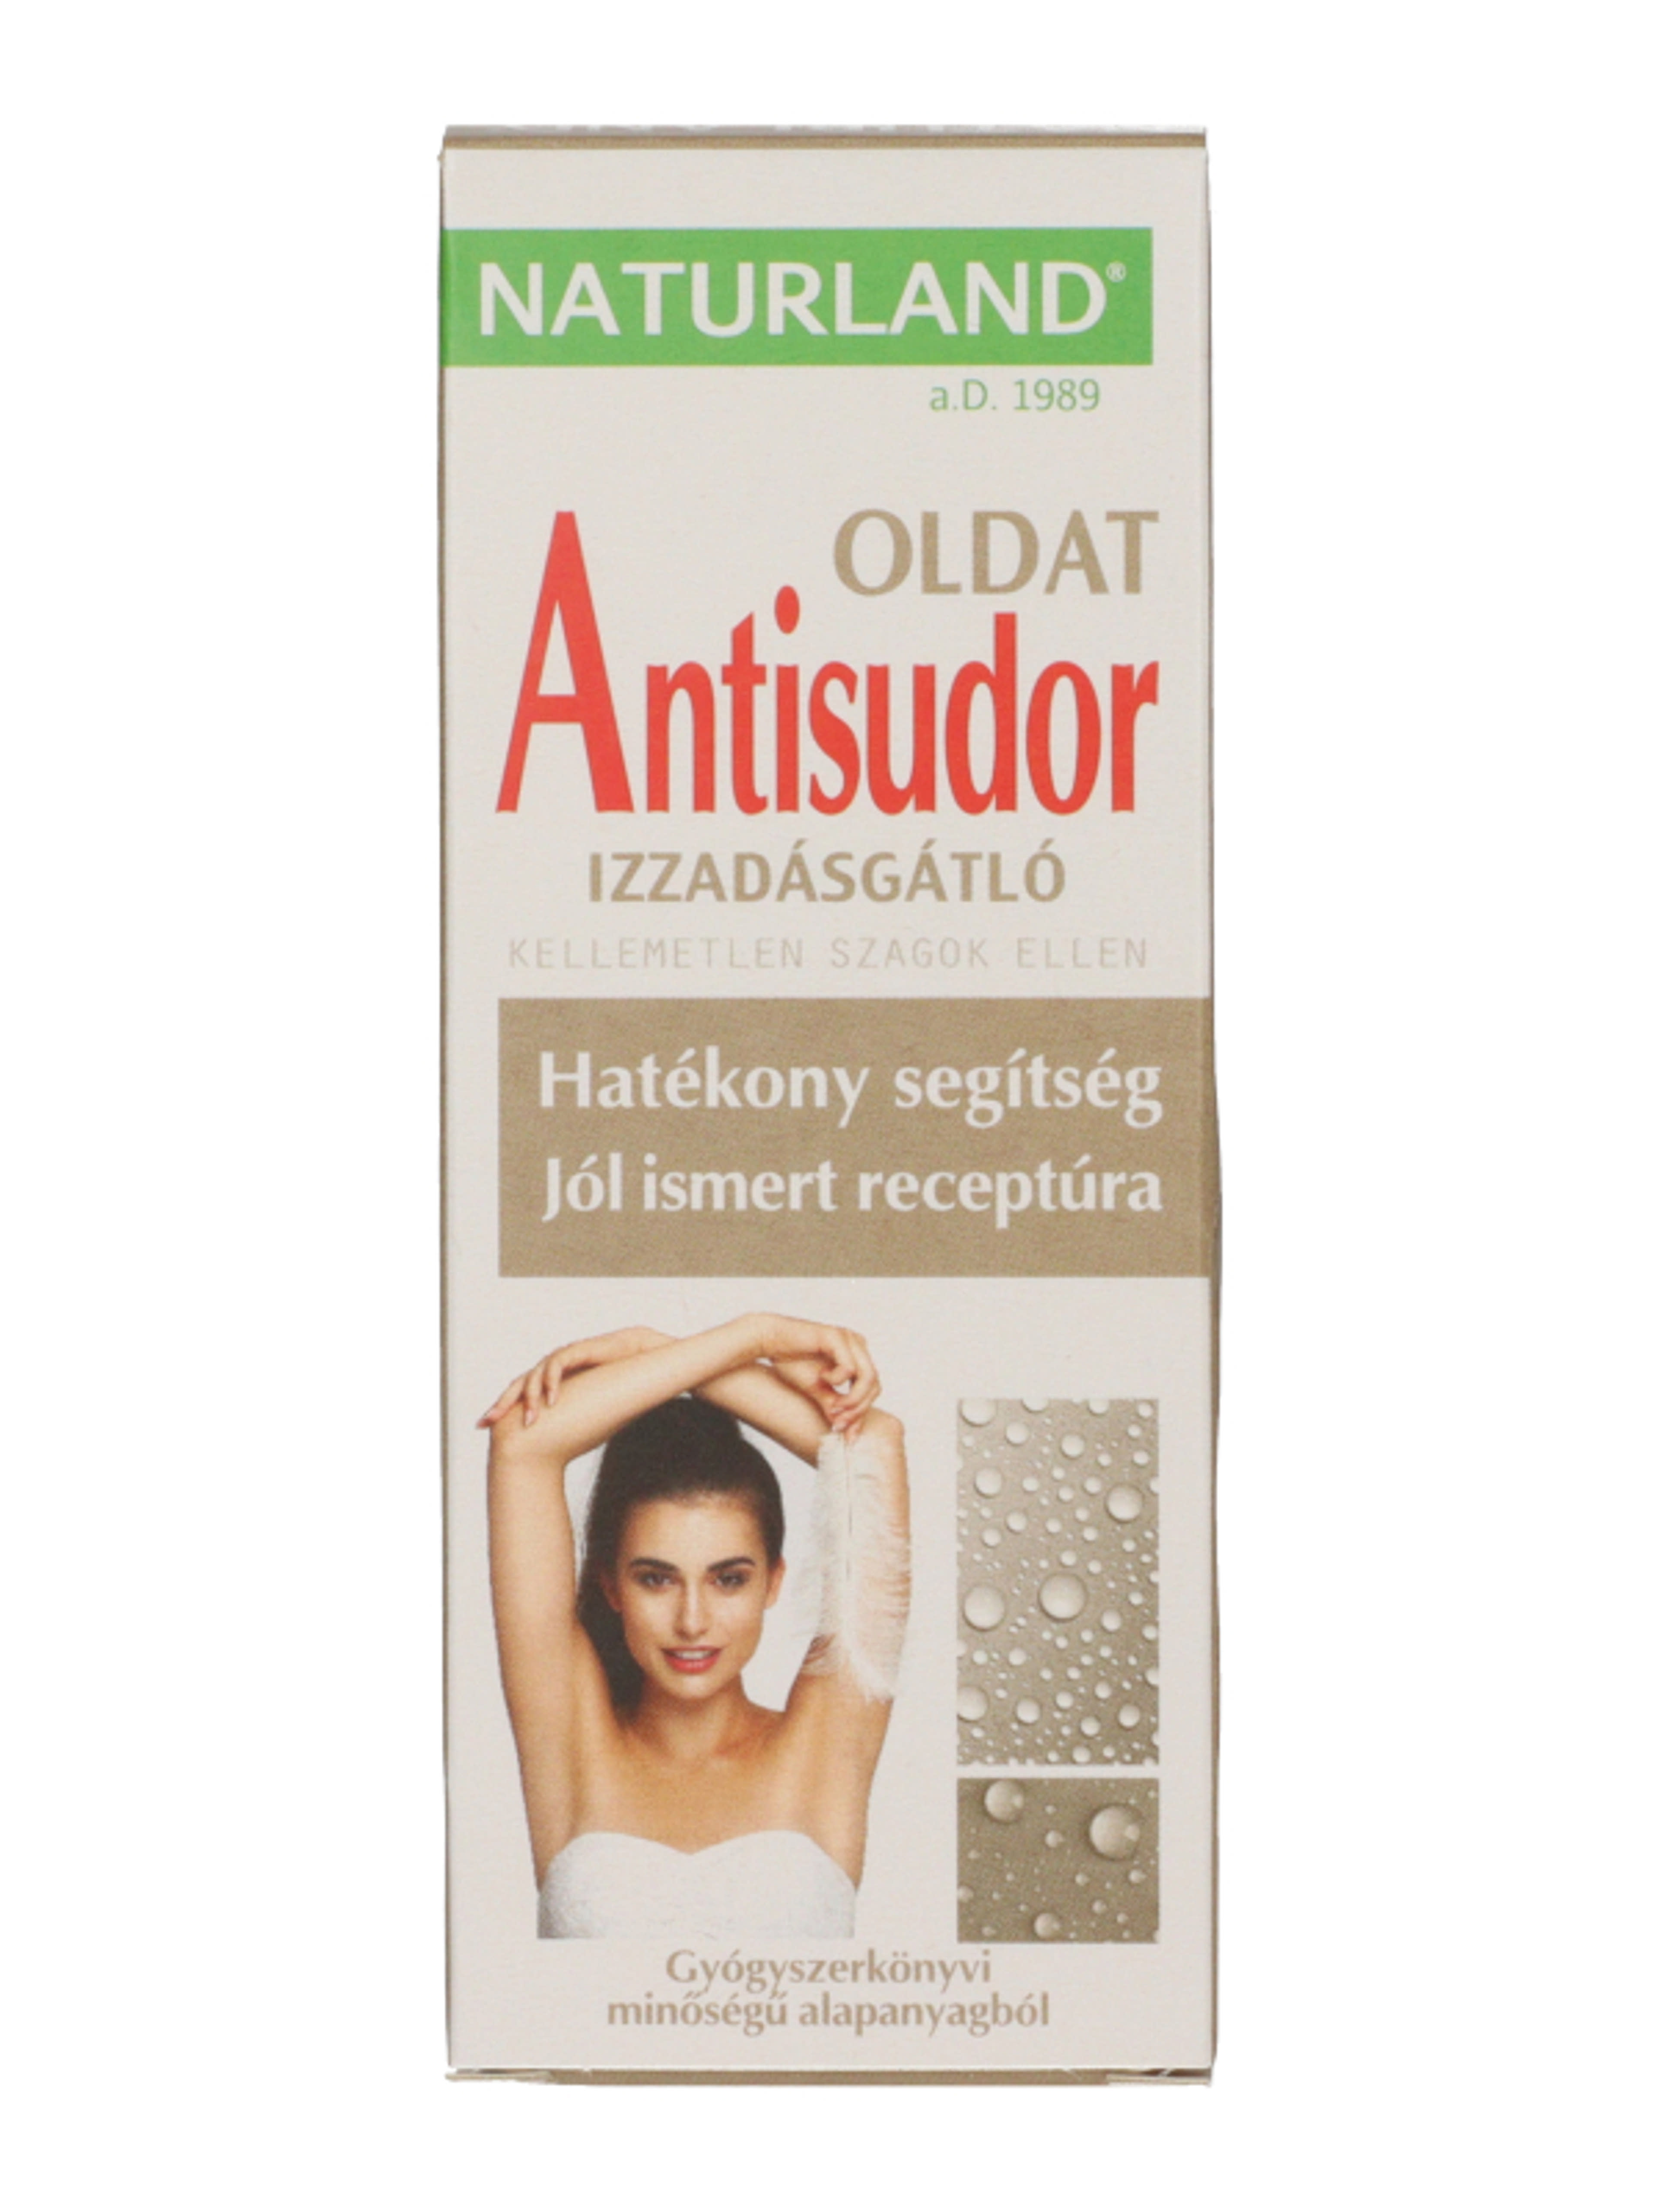 Naturland Antisudor izzadásgátló oldat - 50 ml